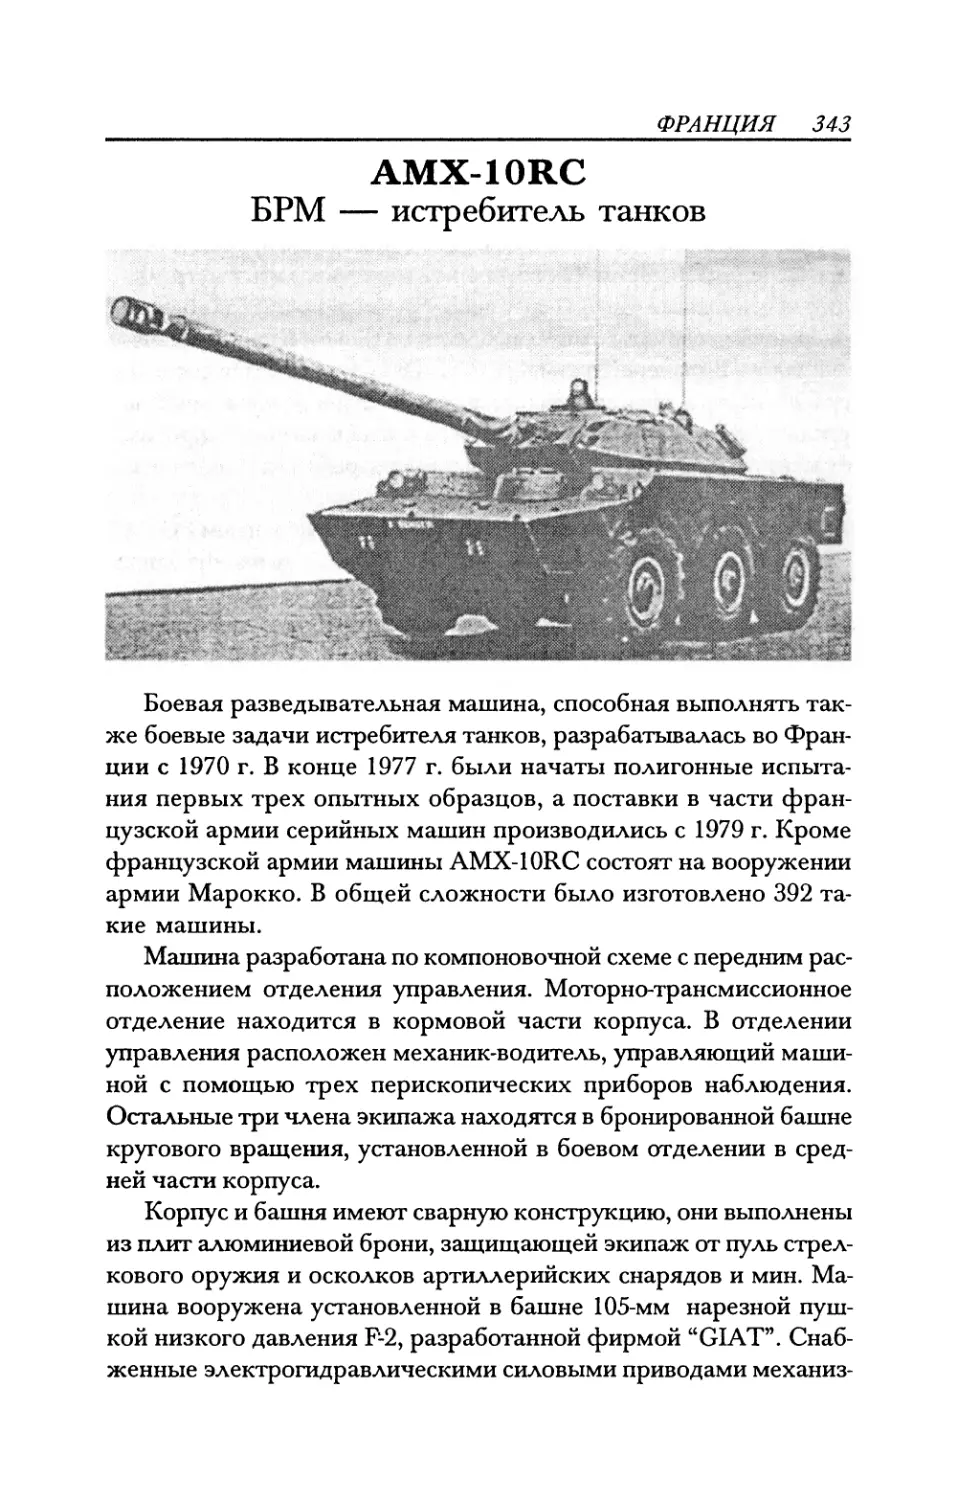 AMX-10RC БРМ — истребитель танков